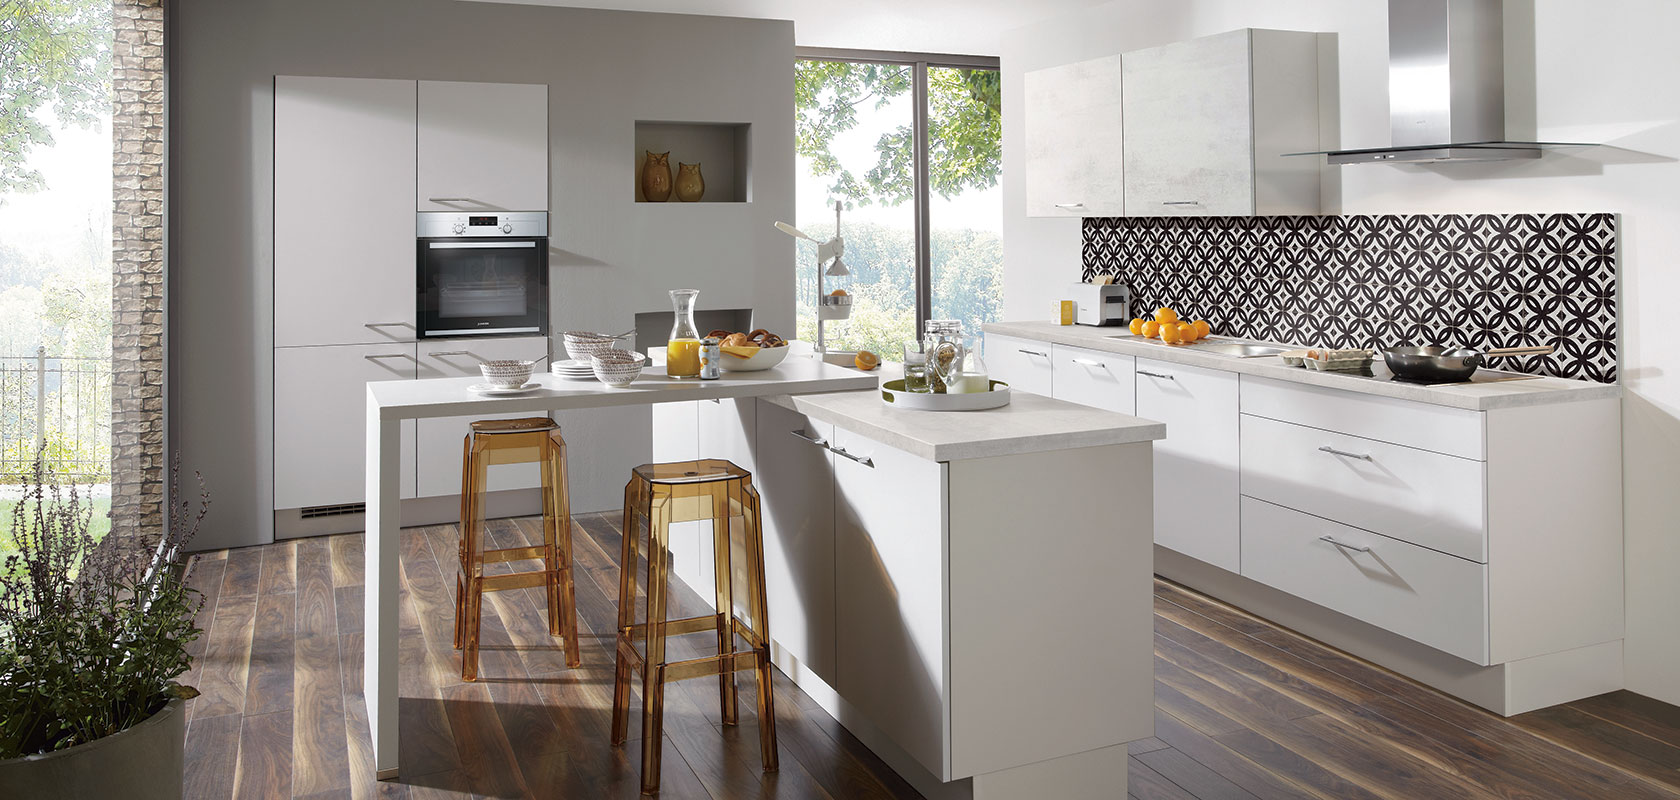 Cucina contemporanea con armadi bianchi, elettrodomestici in acciaio inossidabile, schienale a motivi e un bancone per la colazione con sgabelli accanto a una grande finestra.